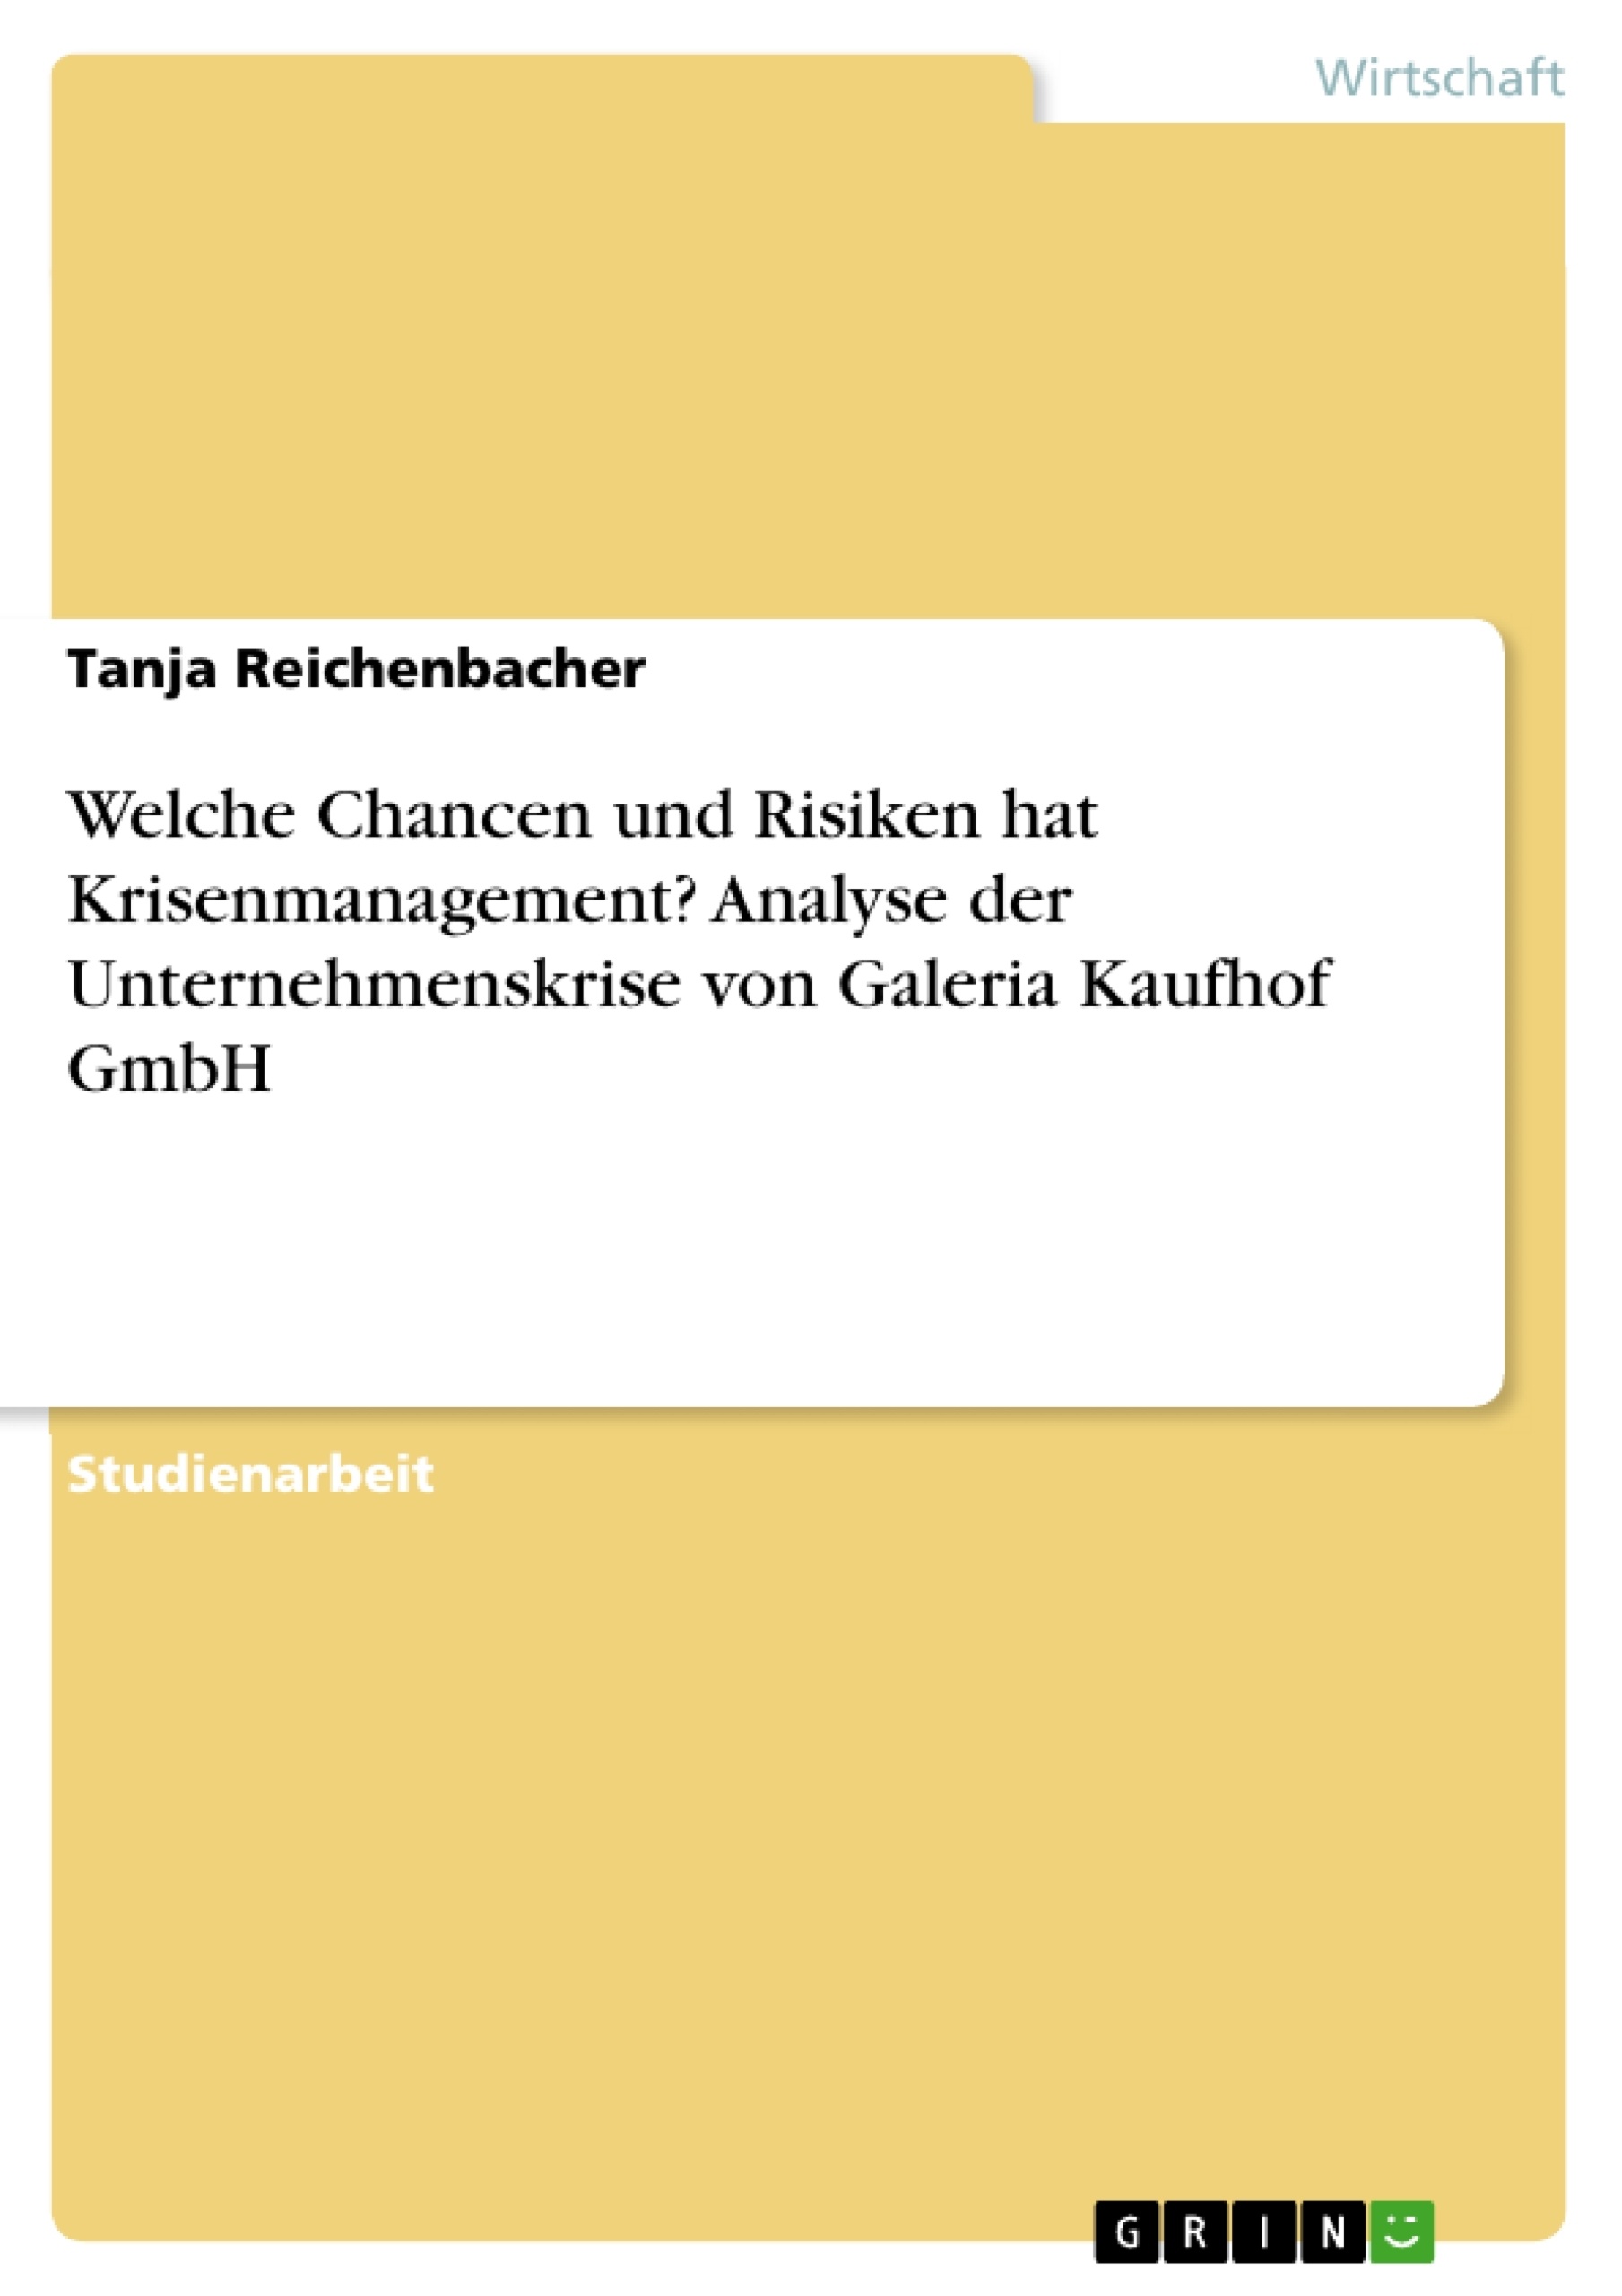 Title: Welche Chancen und Risiken hat Krisenmanagement? Analyse der Unternehmenskrise von Galeria Kaufhof GmbH